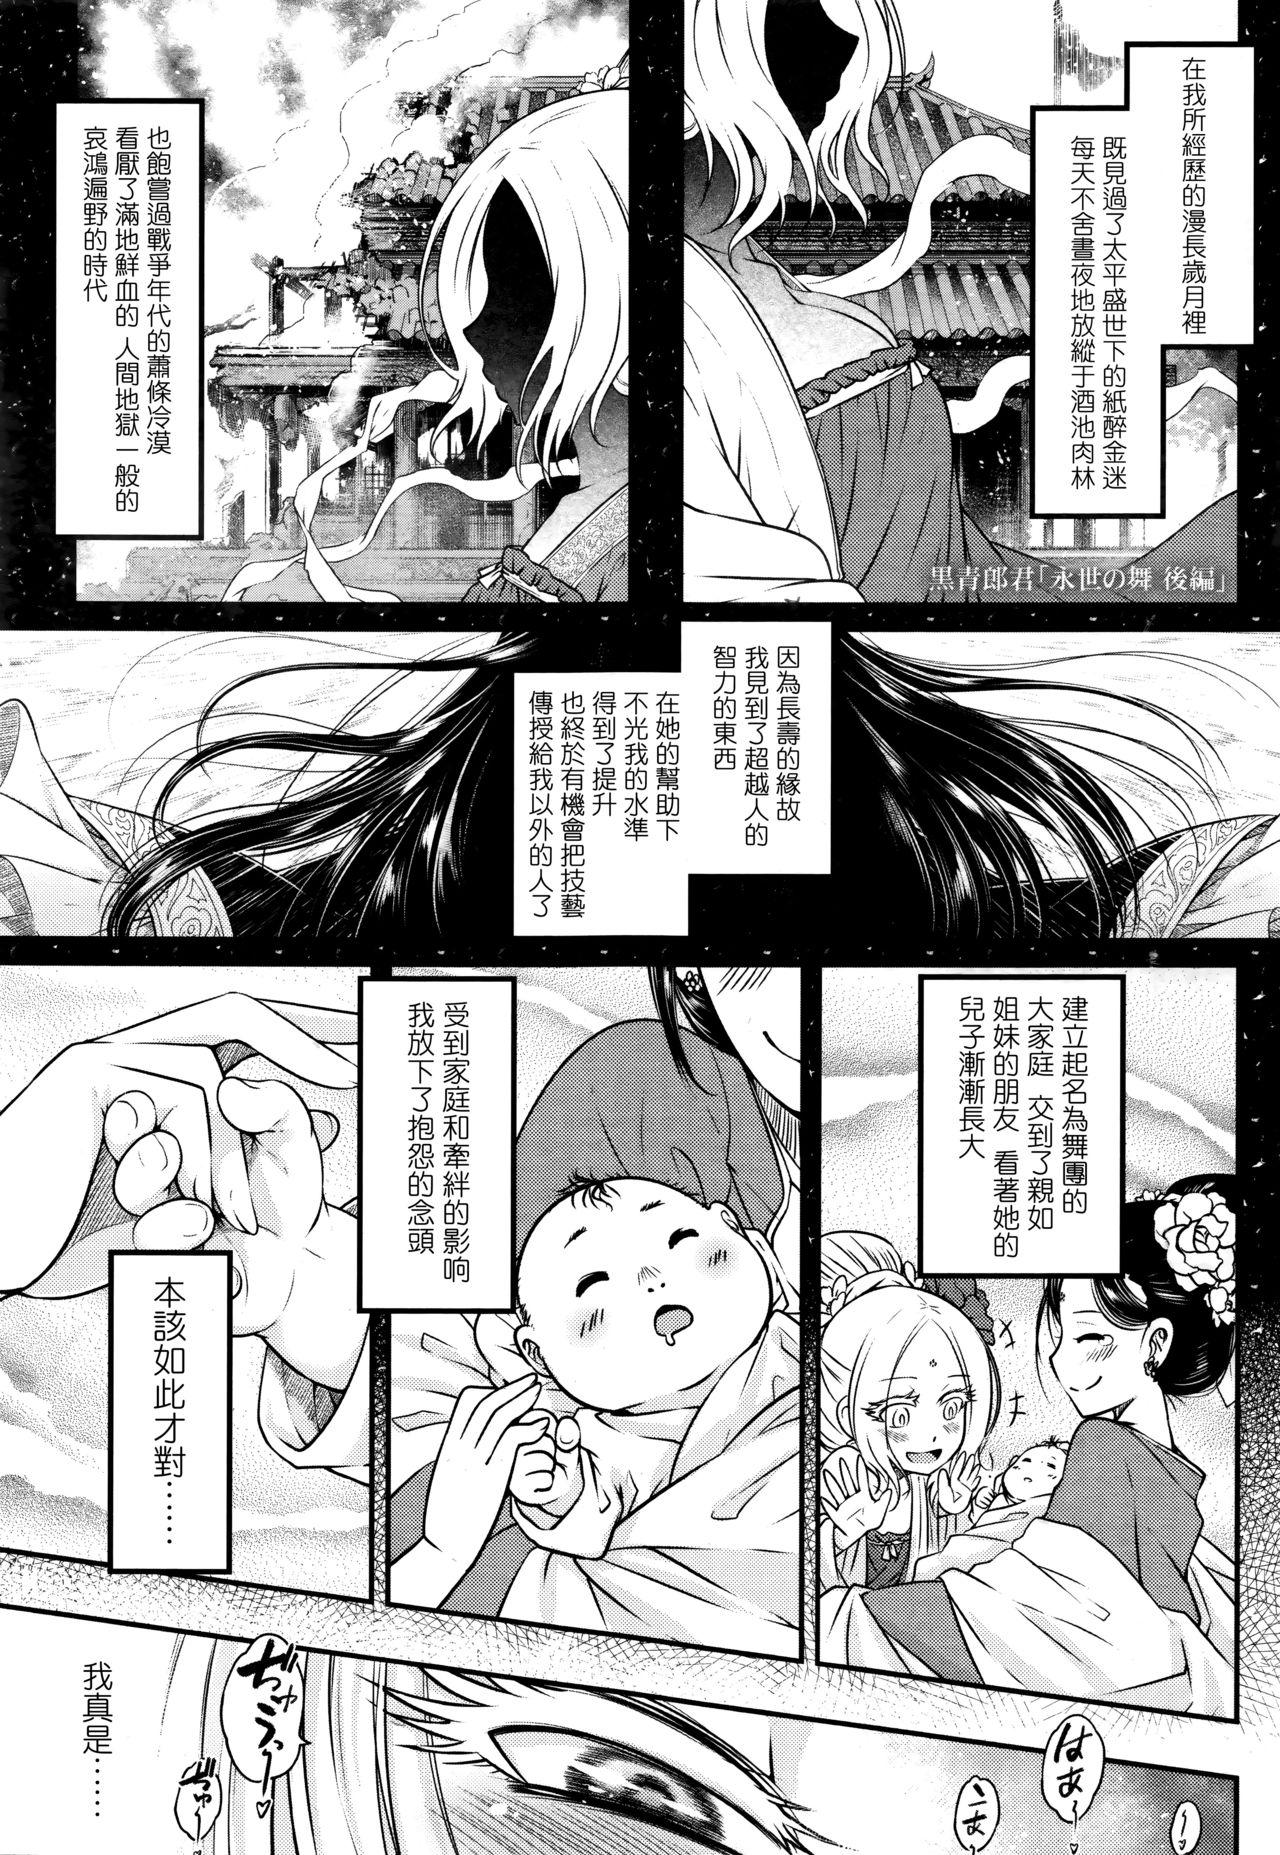 The Eisei no Mai Kouhen Stroking - Page 1